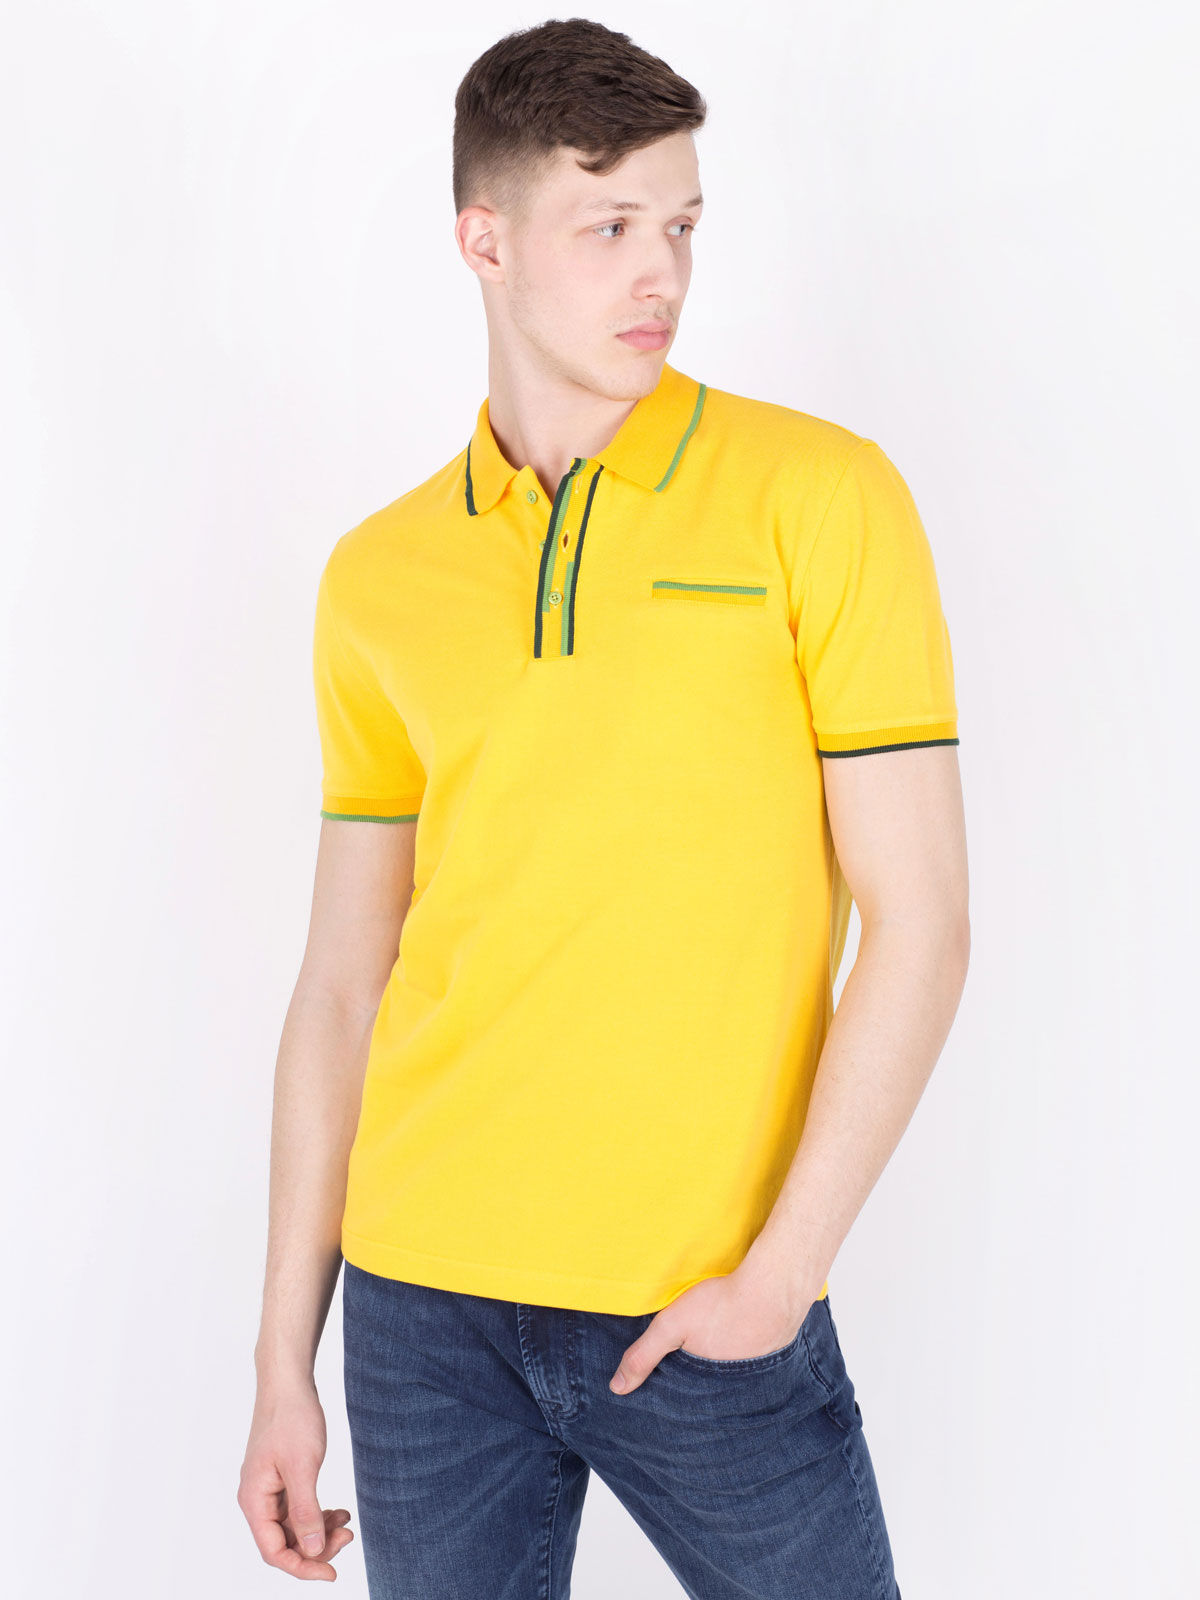 Μπλούζα σε έντονο κίτρινο χρώμα με χρωμ - 93384 € 16.31 img3